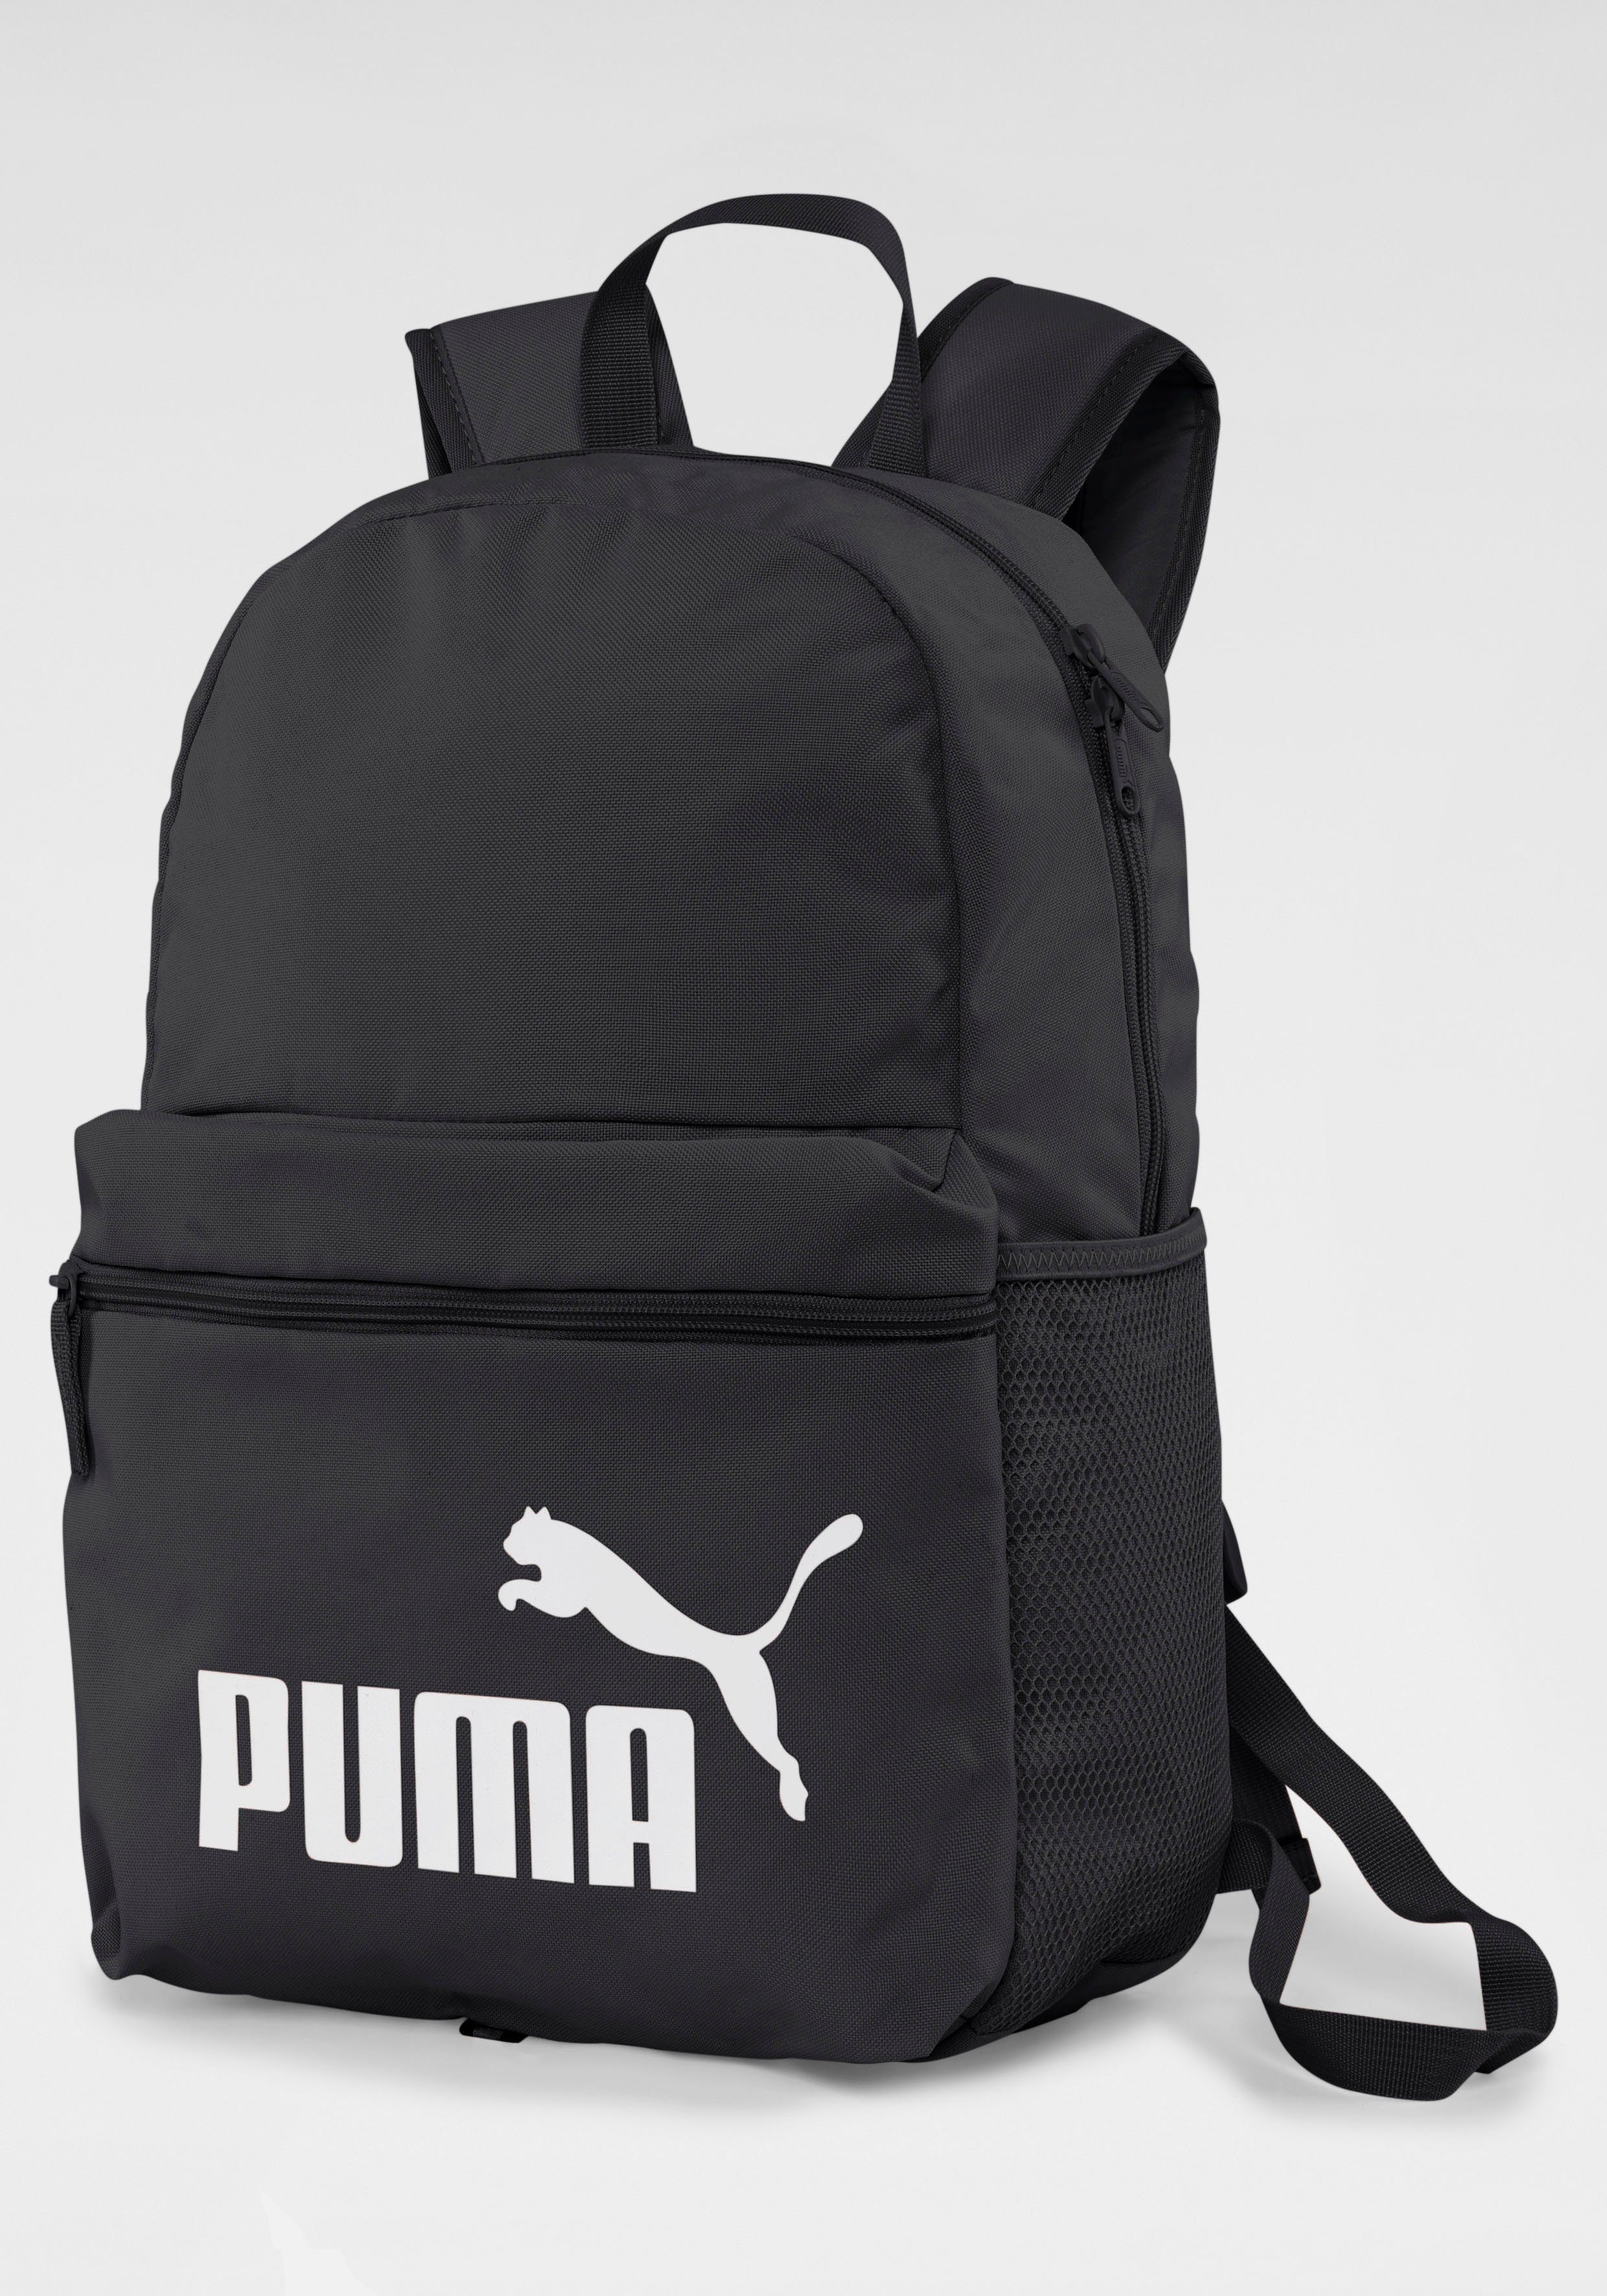 PUMA Sportrucksack »PUMA PHASE BACKPACK« online kaufen | OTTO